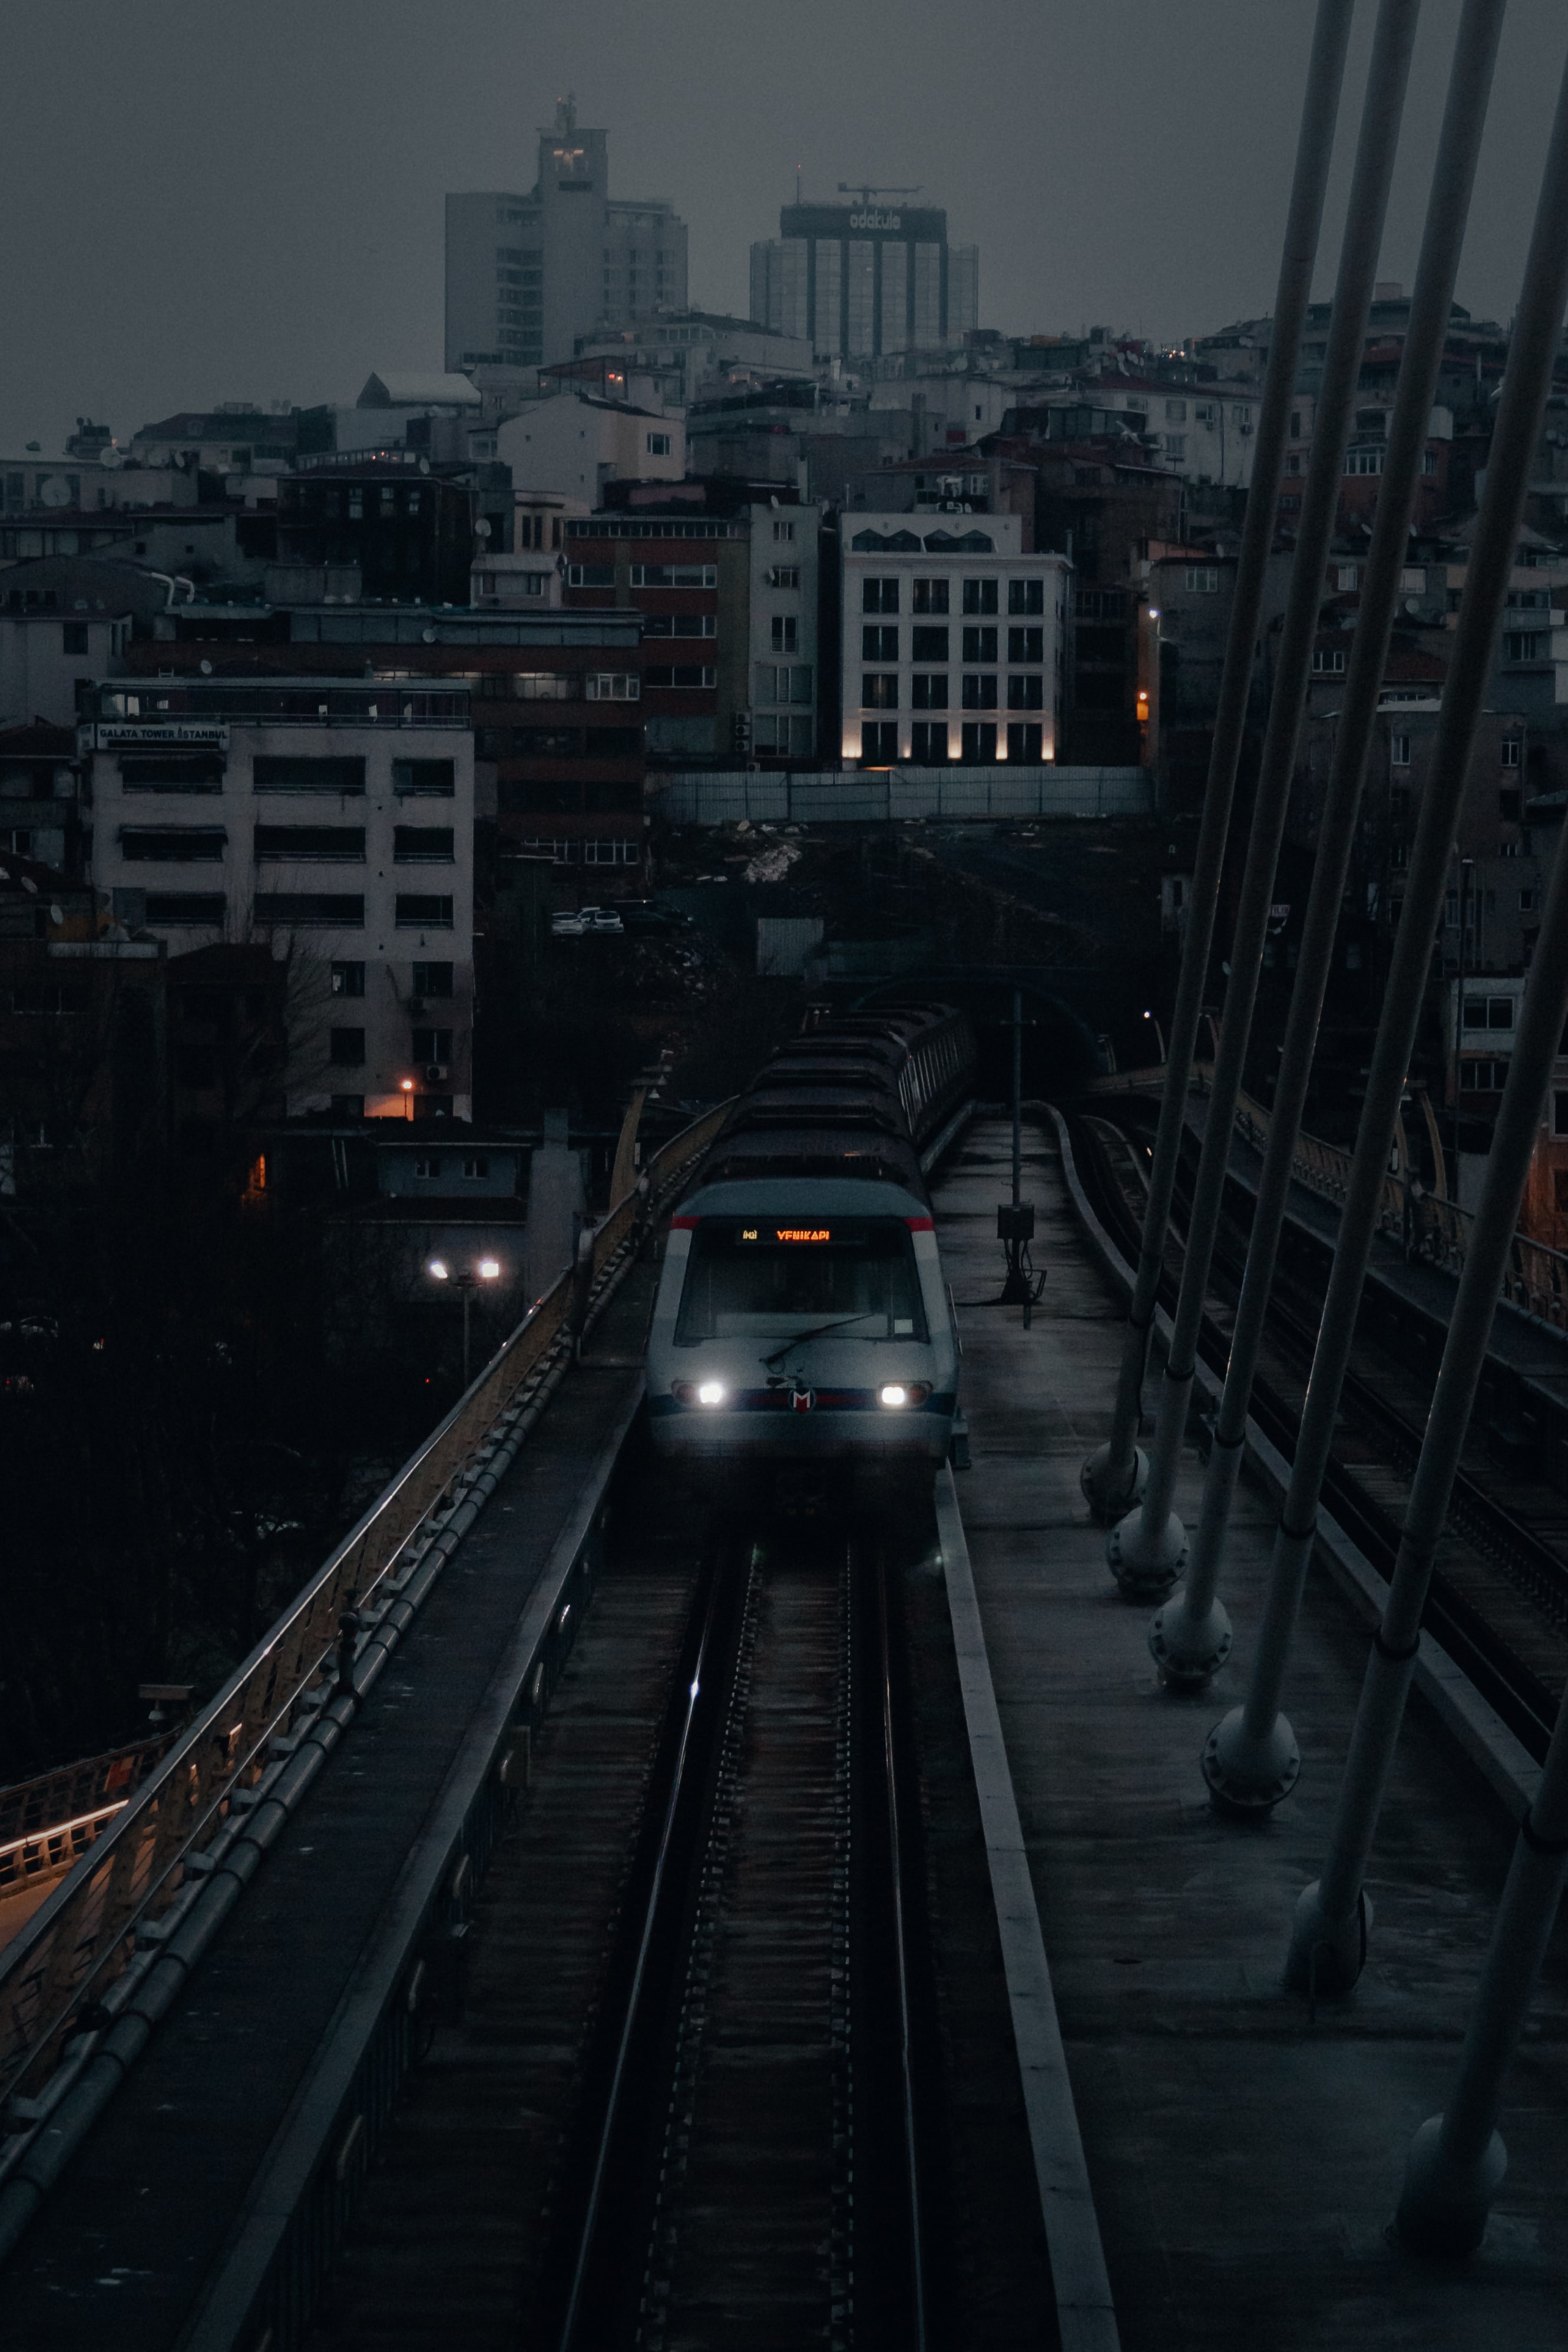 twilight, cities, city, building, dusk, railway, train cellphone